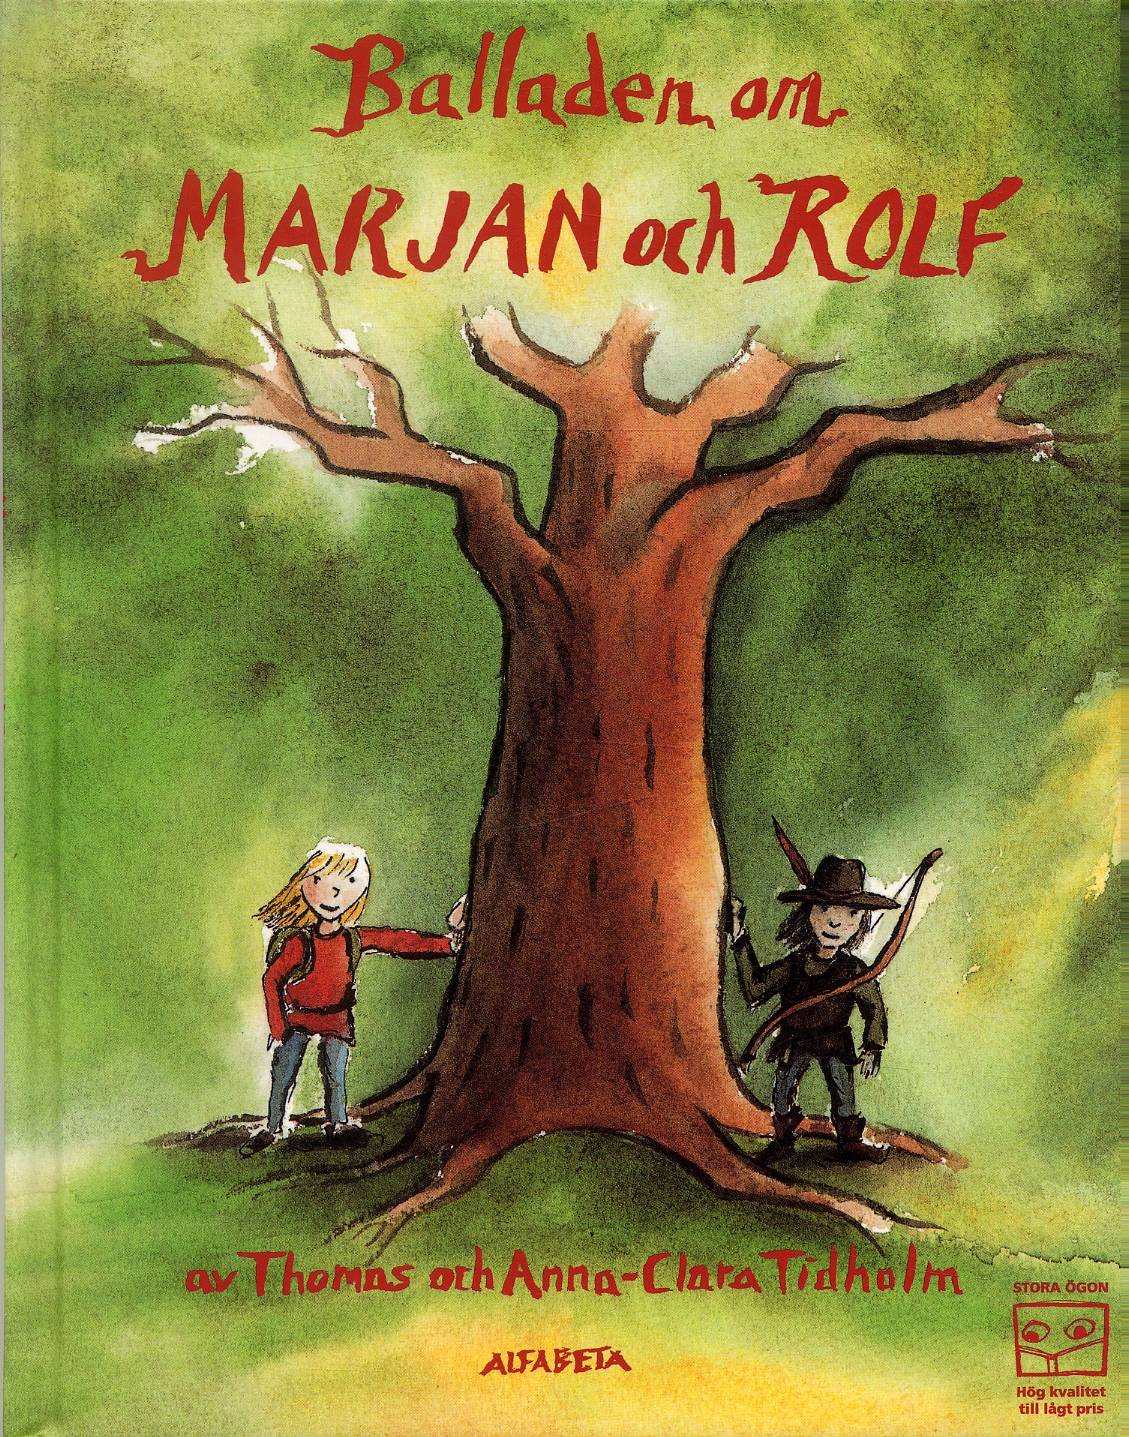 Balladen om Marjan o Rolf